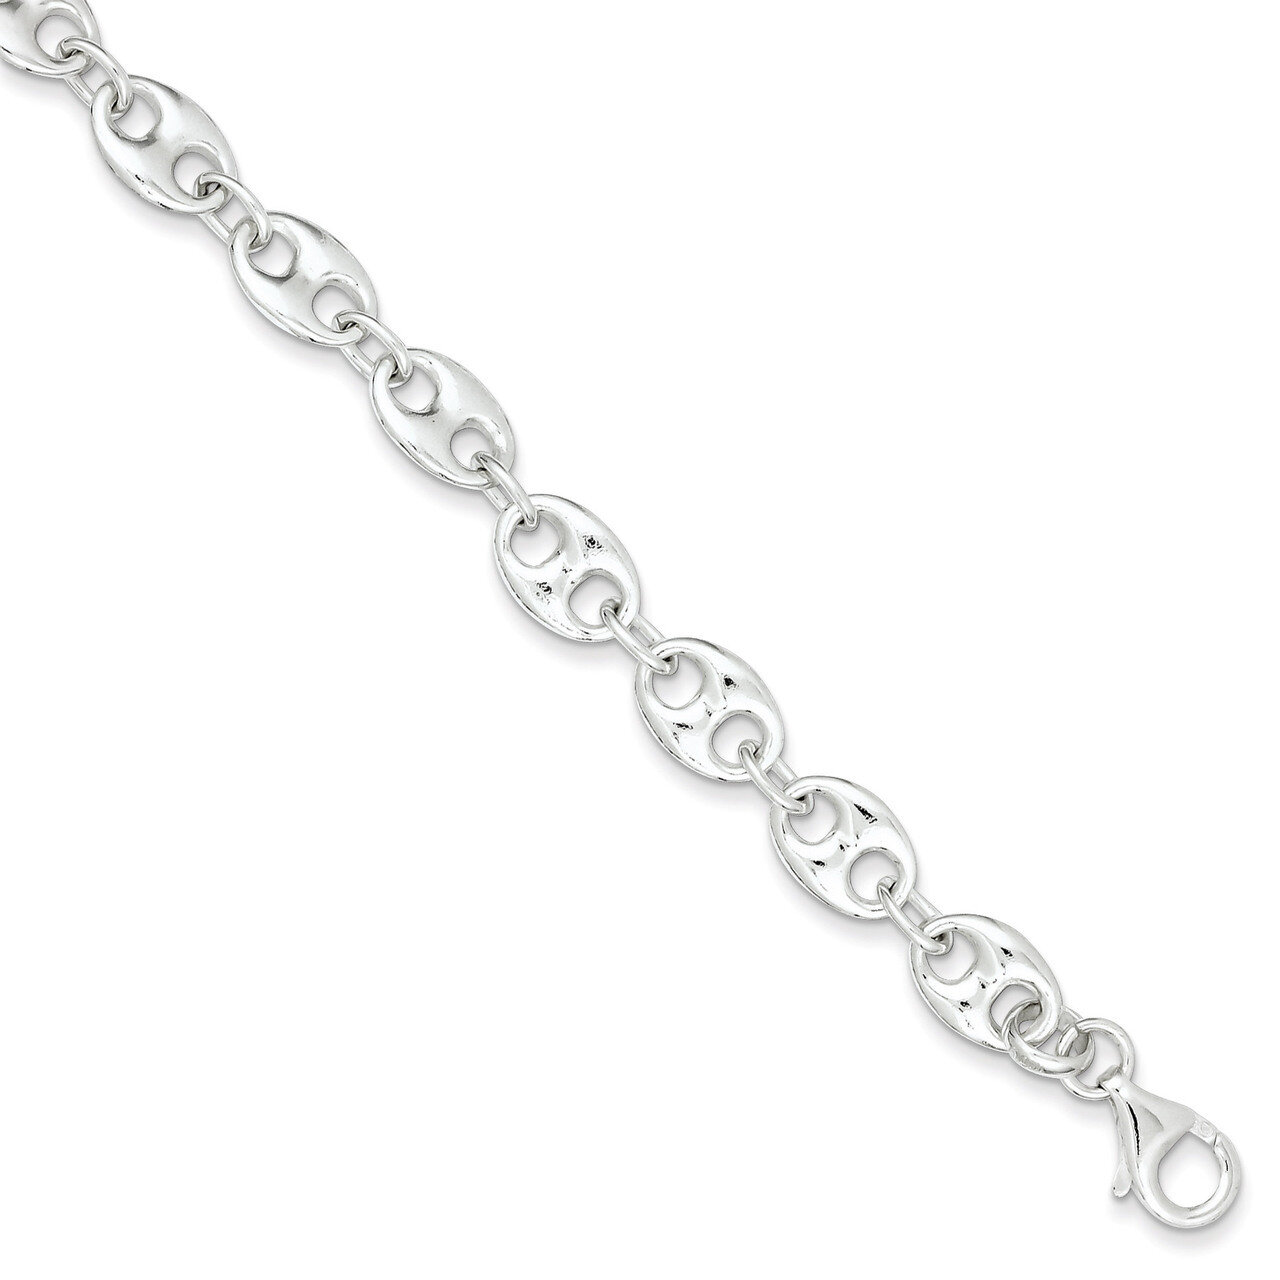 7.75 Inch Bracelet Sterling Silver Polished QG3317-7.75